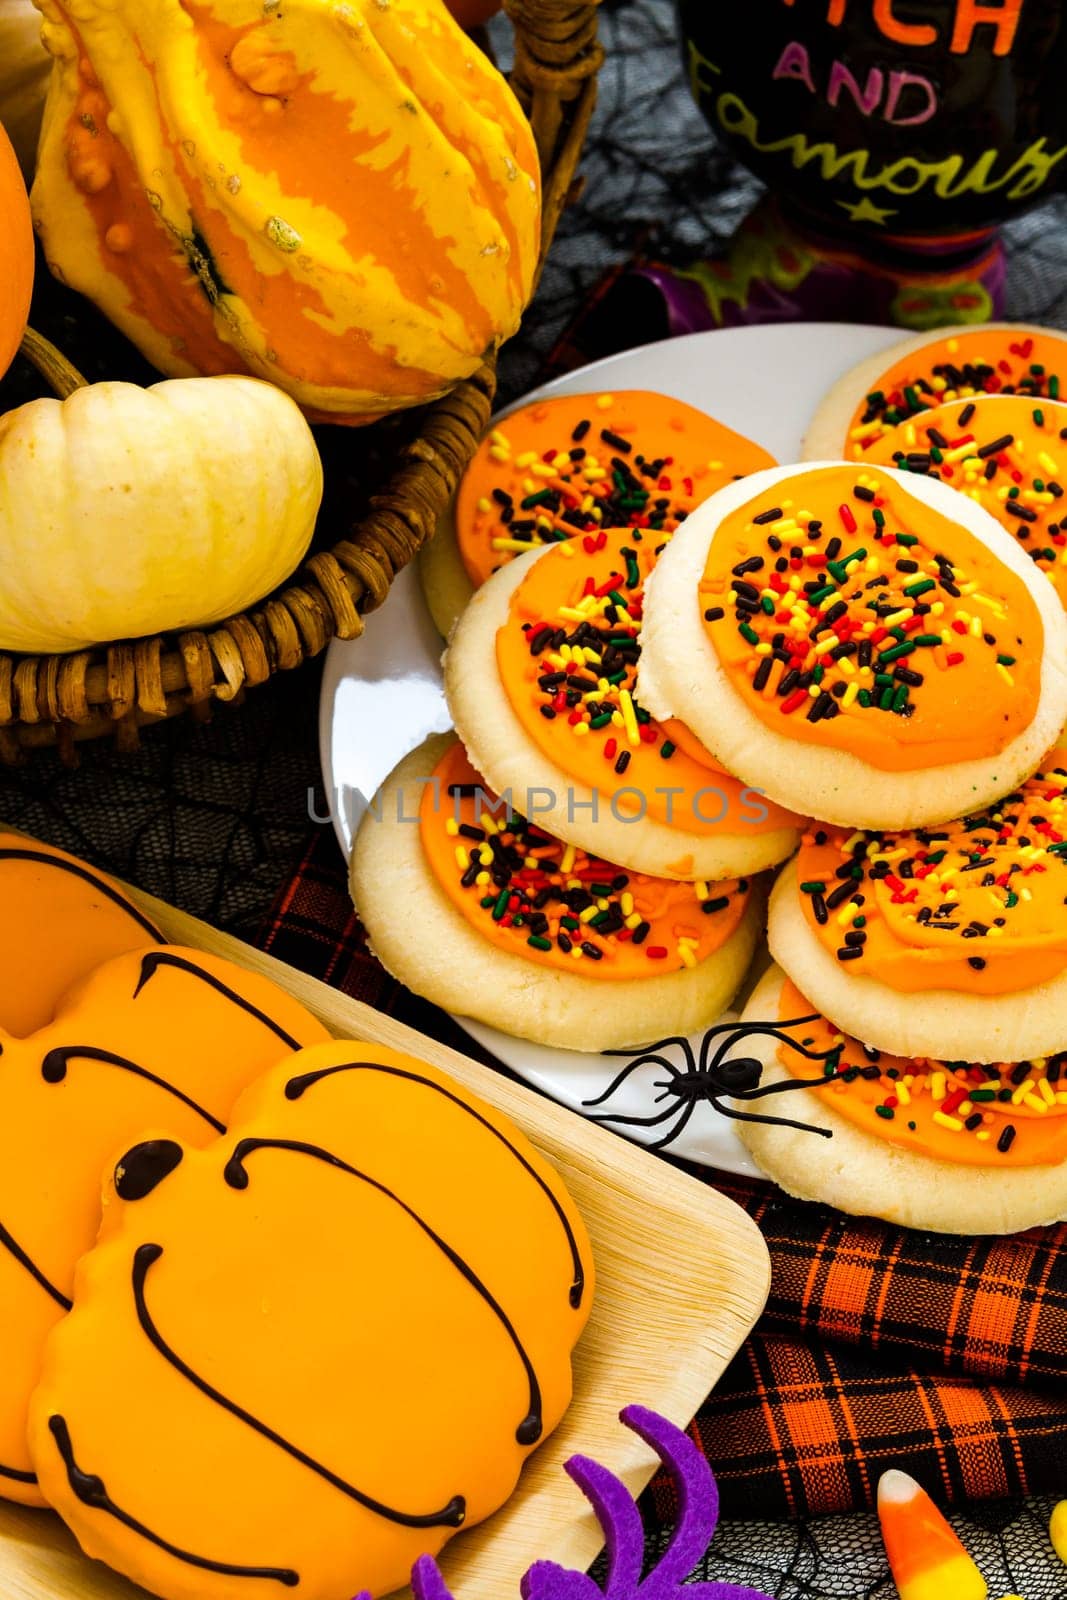 Sugar cookies with orange icing and spkinkles.